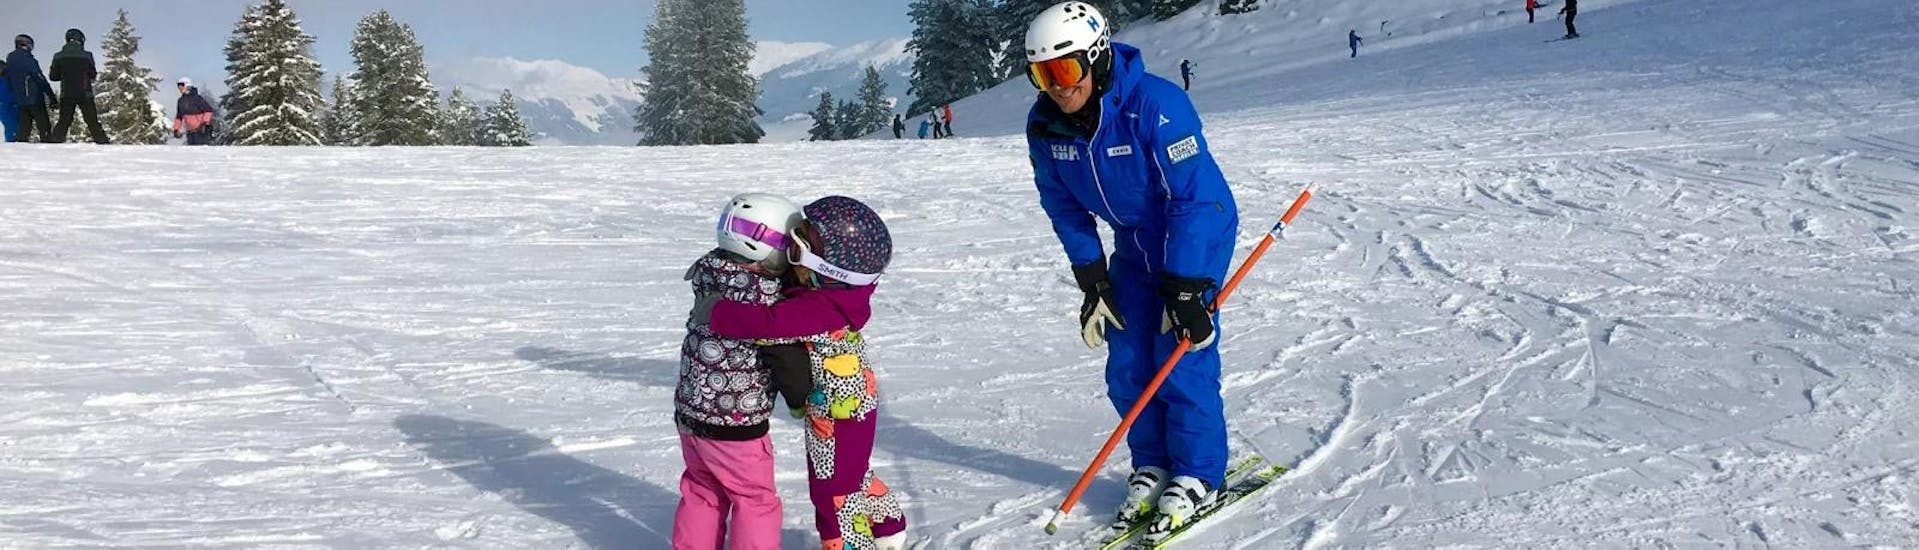 Deux petits enfants s'amusent pendant leur Cours particulier de ski Enfants & Ados (dès 3 ans) pour Tous niveaux, sous la surveillance de leur moniteur de ski de l'École de ski Habeler - Mayrhofen.